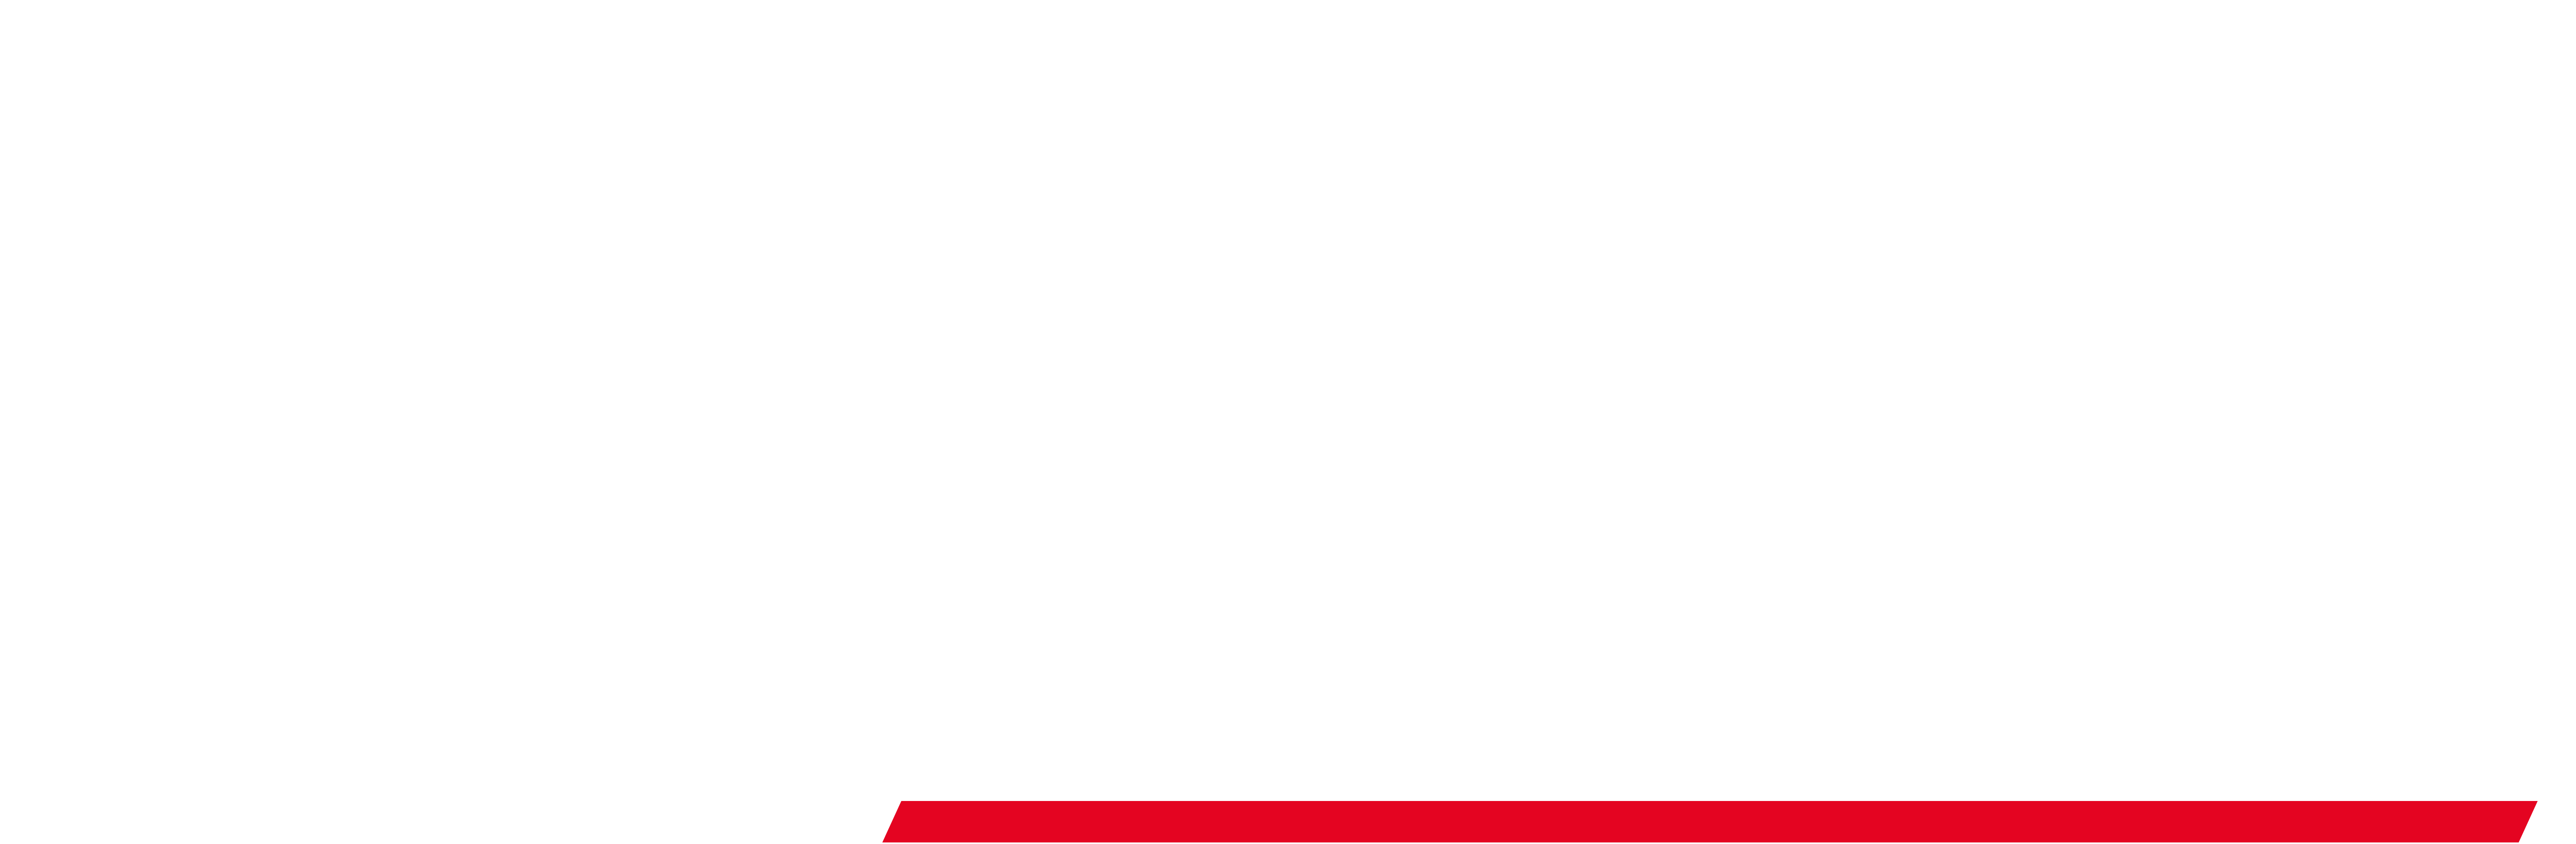 Lavrysen_dealer-service_neg.png